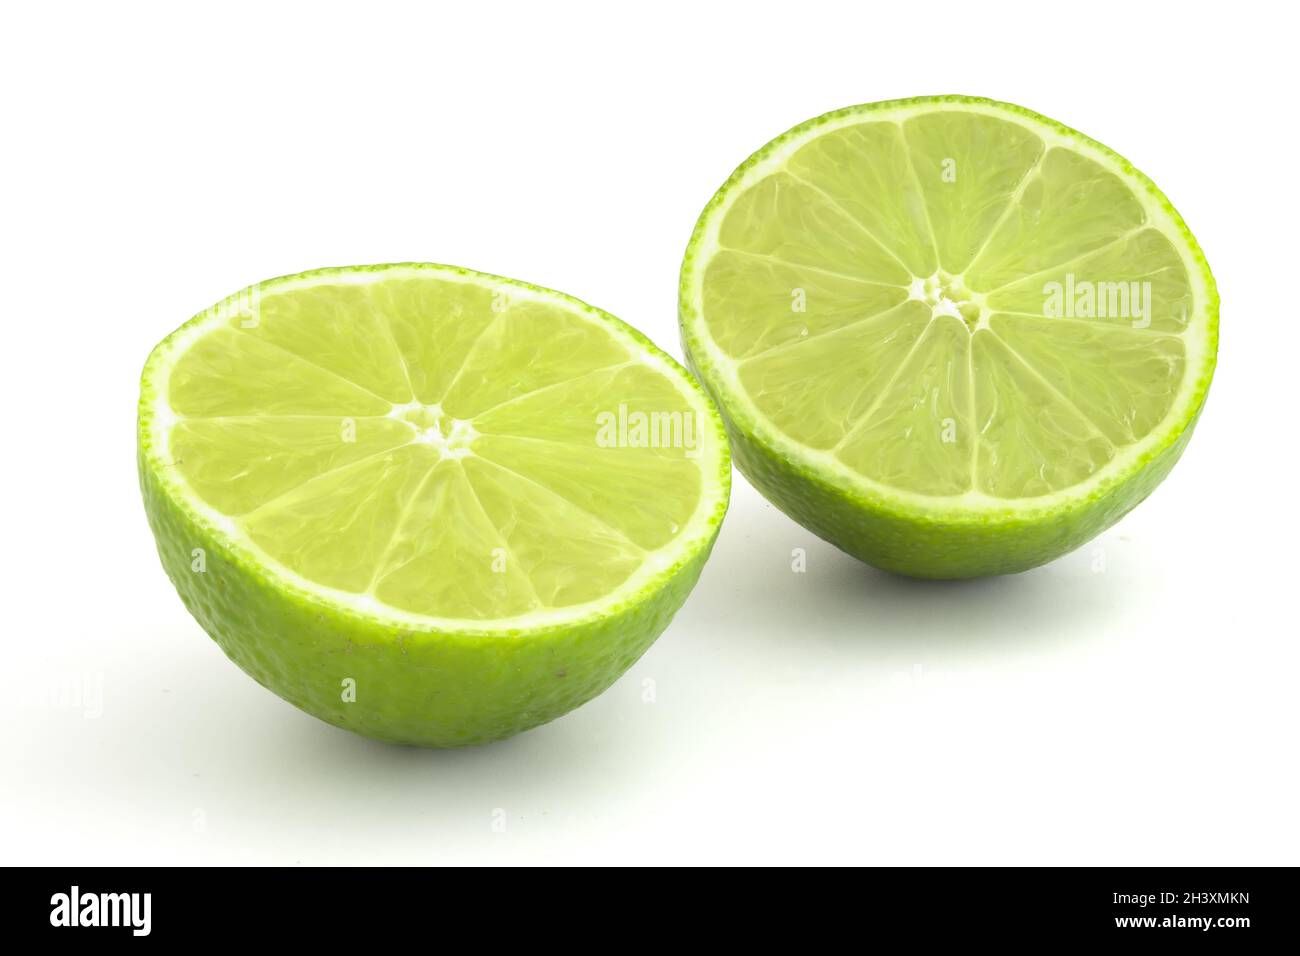 Kalk im Abschnitt isoliert auf weißem Hintergrund. Reife grüne Zitrusfrüchte für Cocktails und alkoholische Getränke. Stockfoto